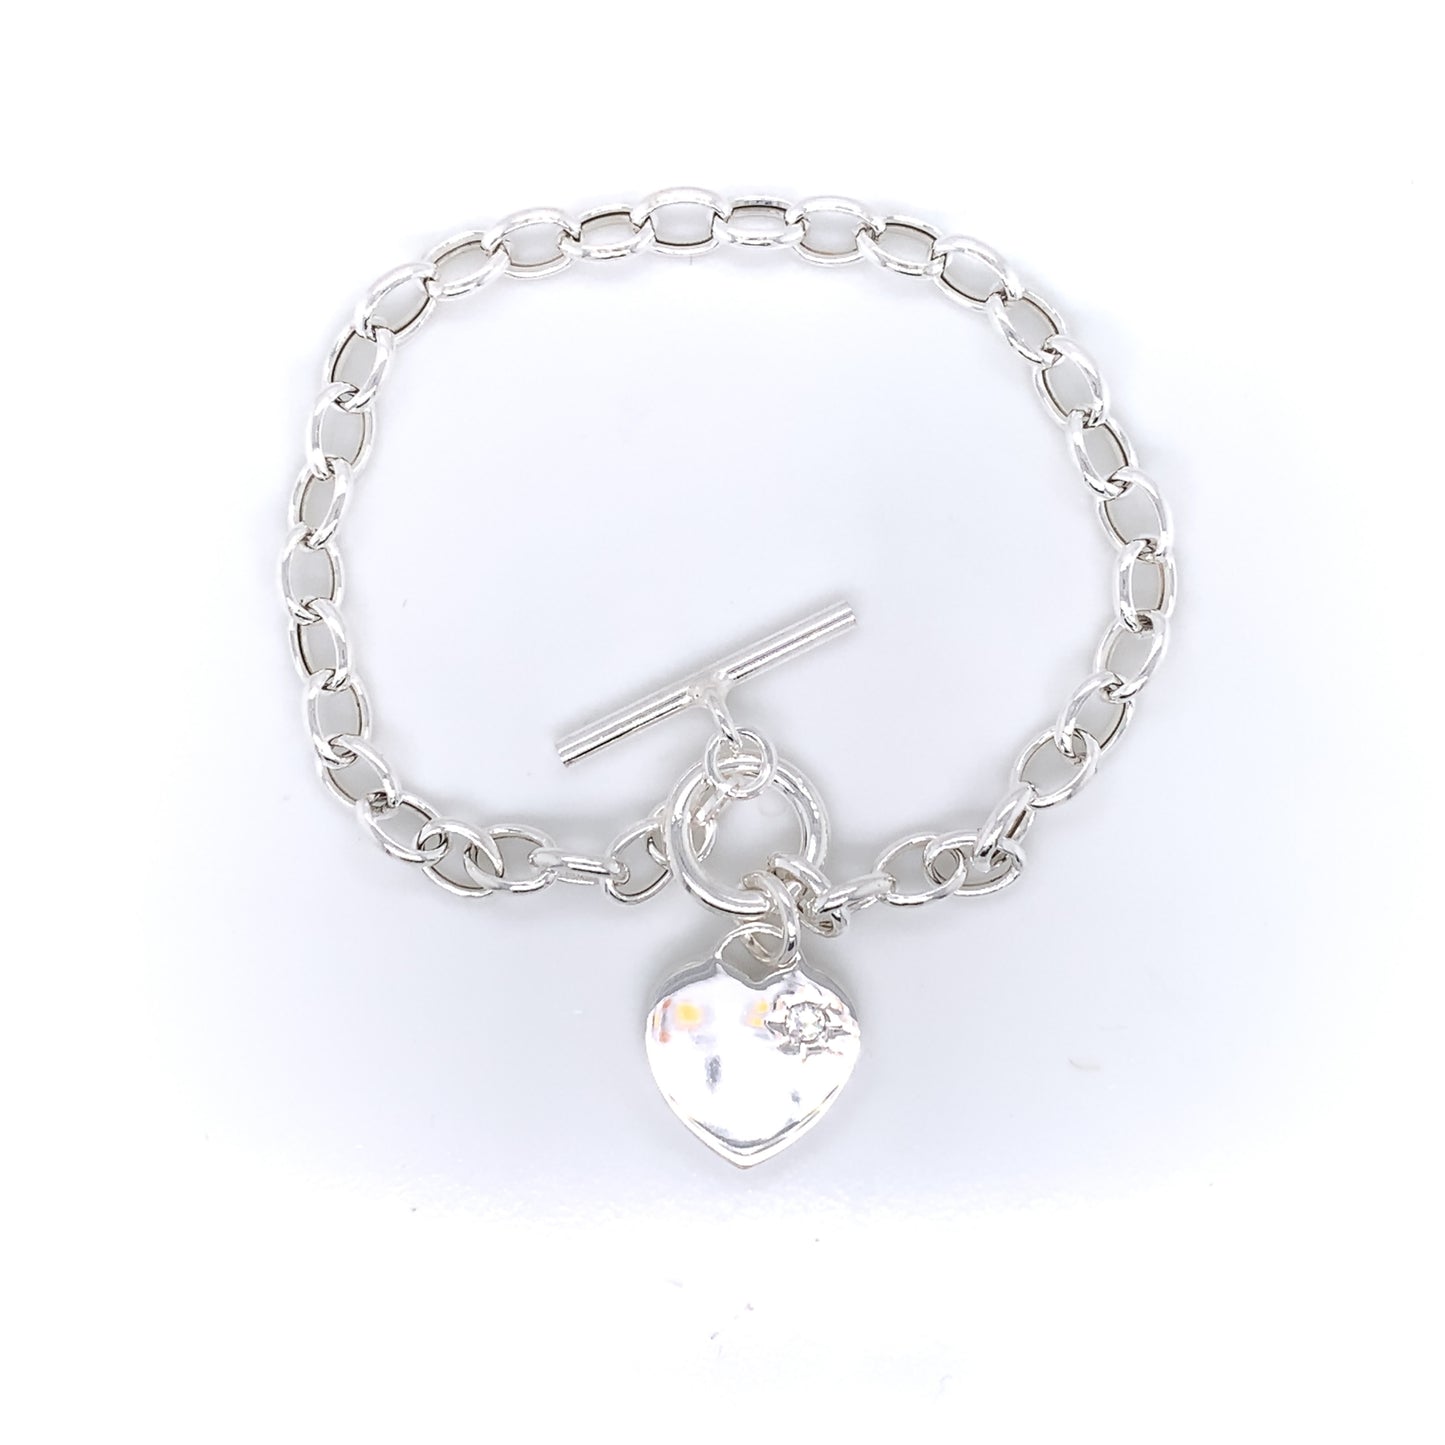 Sterling Silver Tiffany-style CZ Heart Bracelet 93T/7